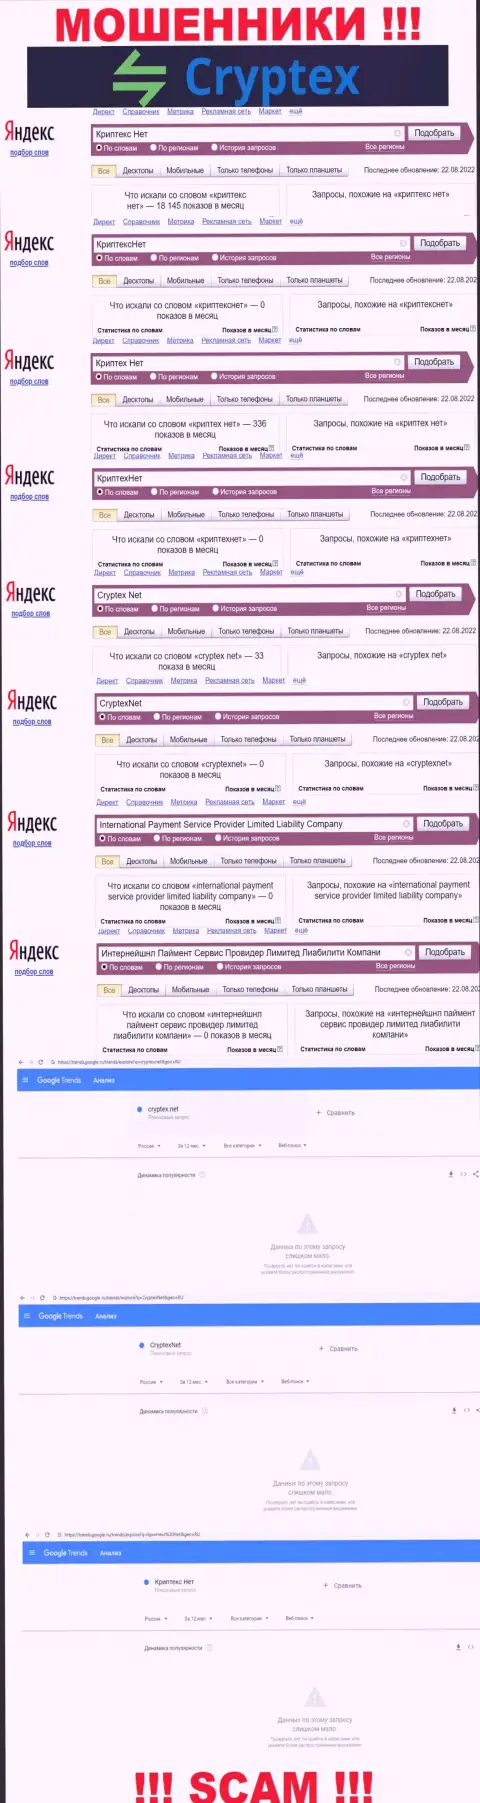 Скрин результатов онлайн запросов по незаконно действующей конторе КриптехНет